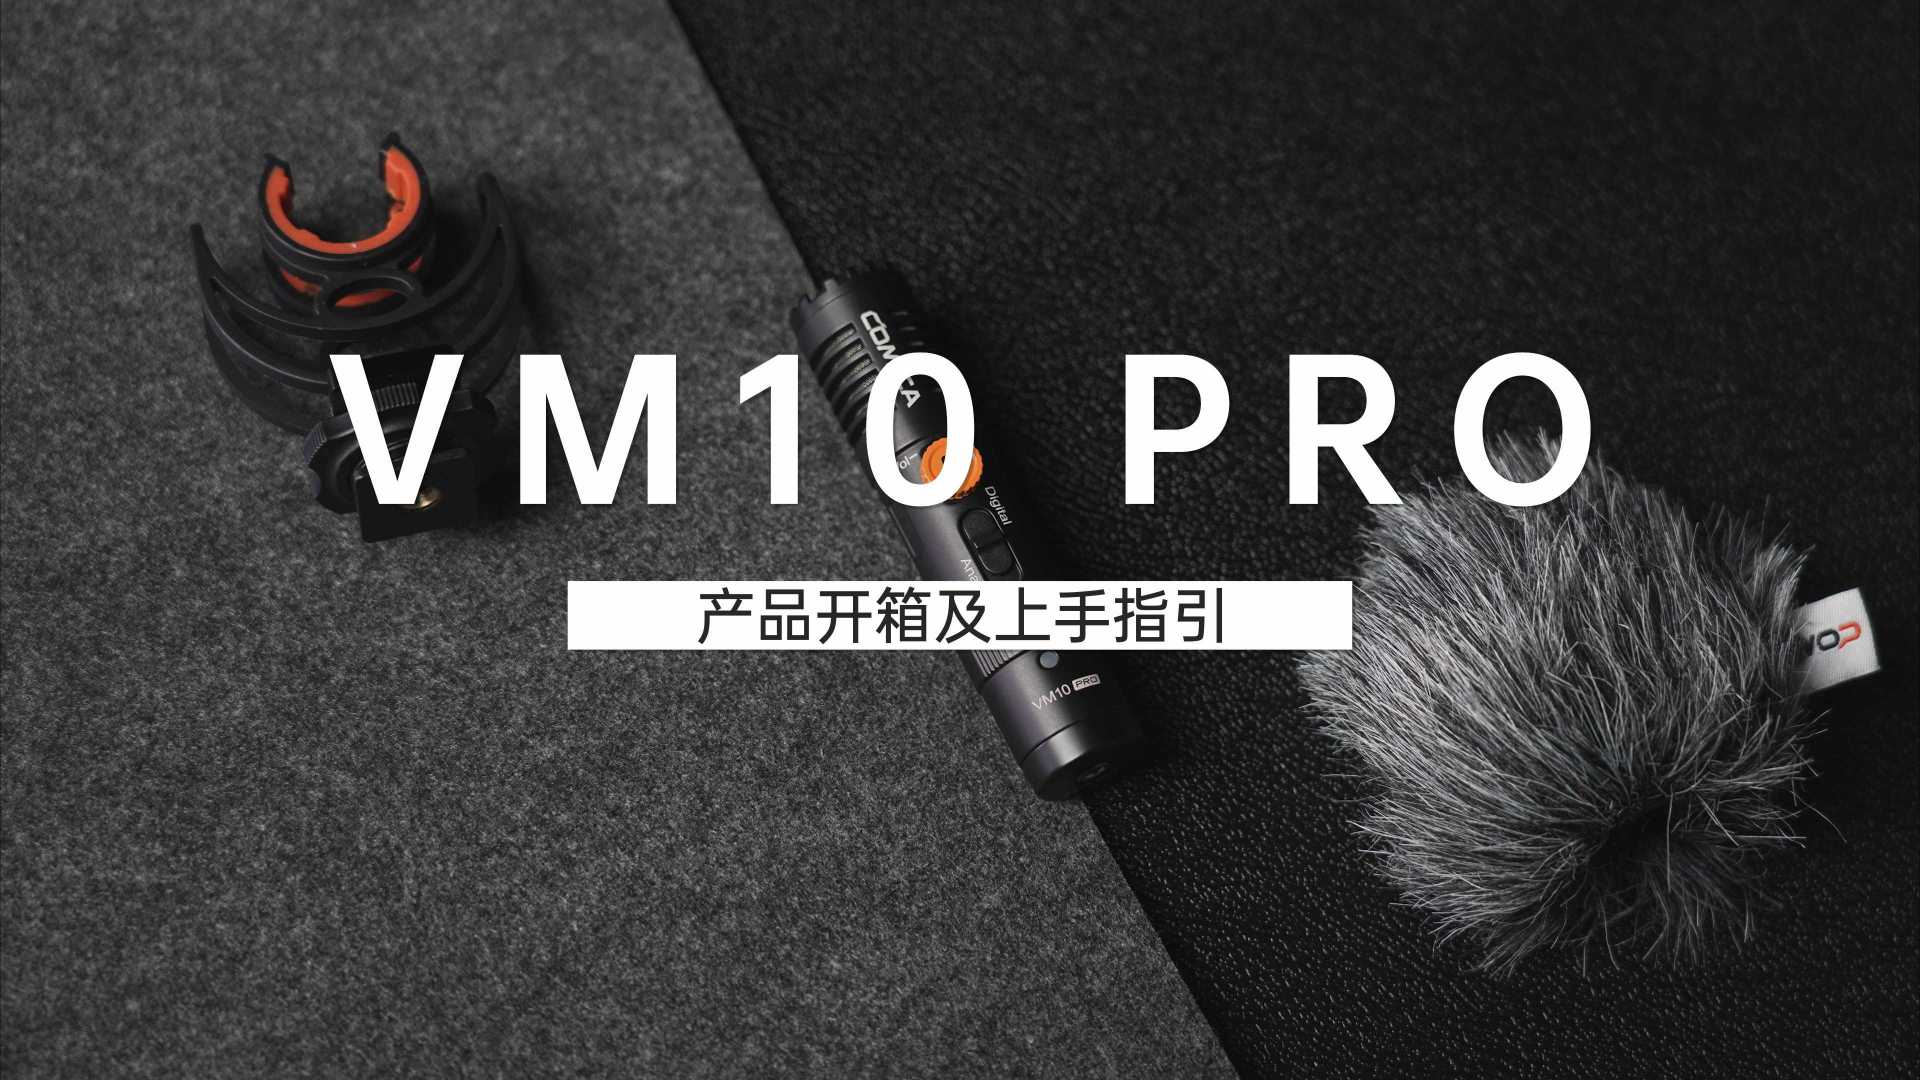 【科唛VM10 PRO】产品开箱及上手指引